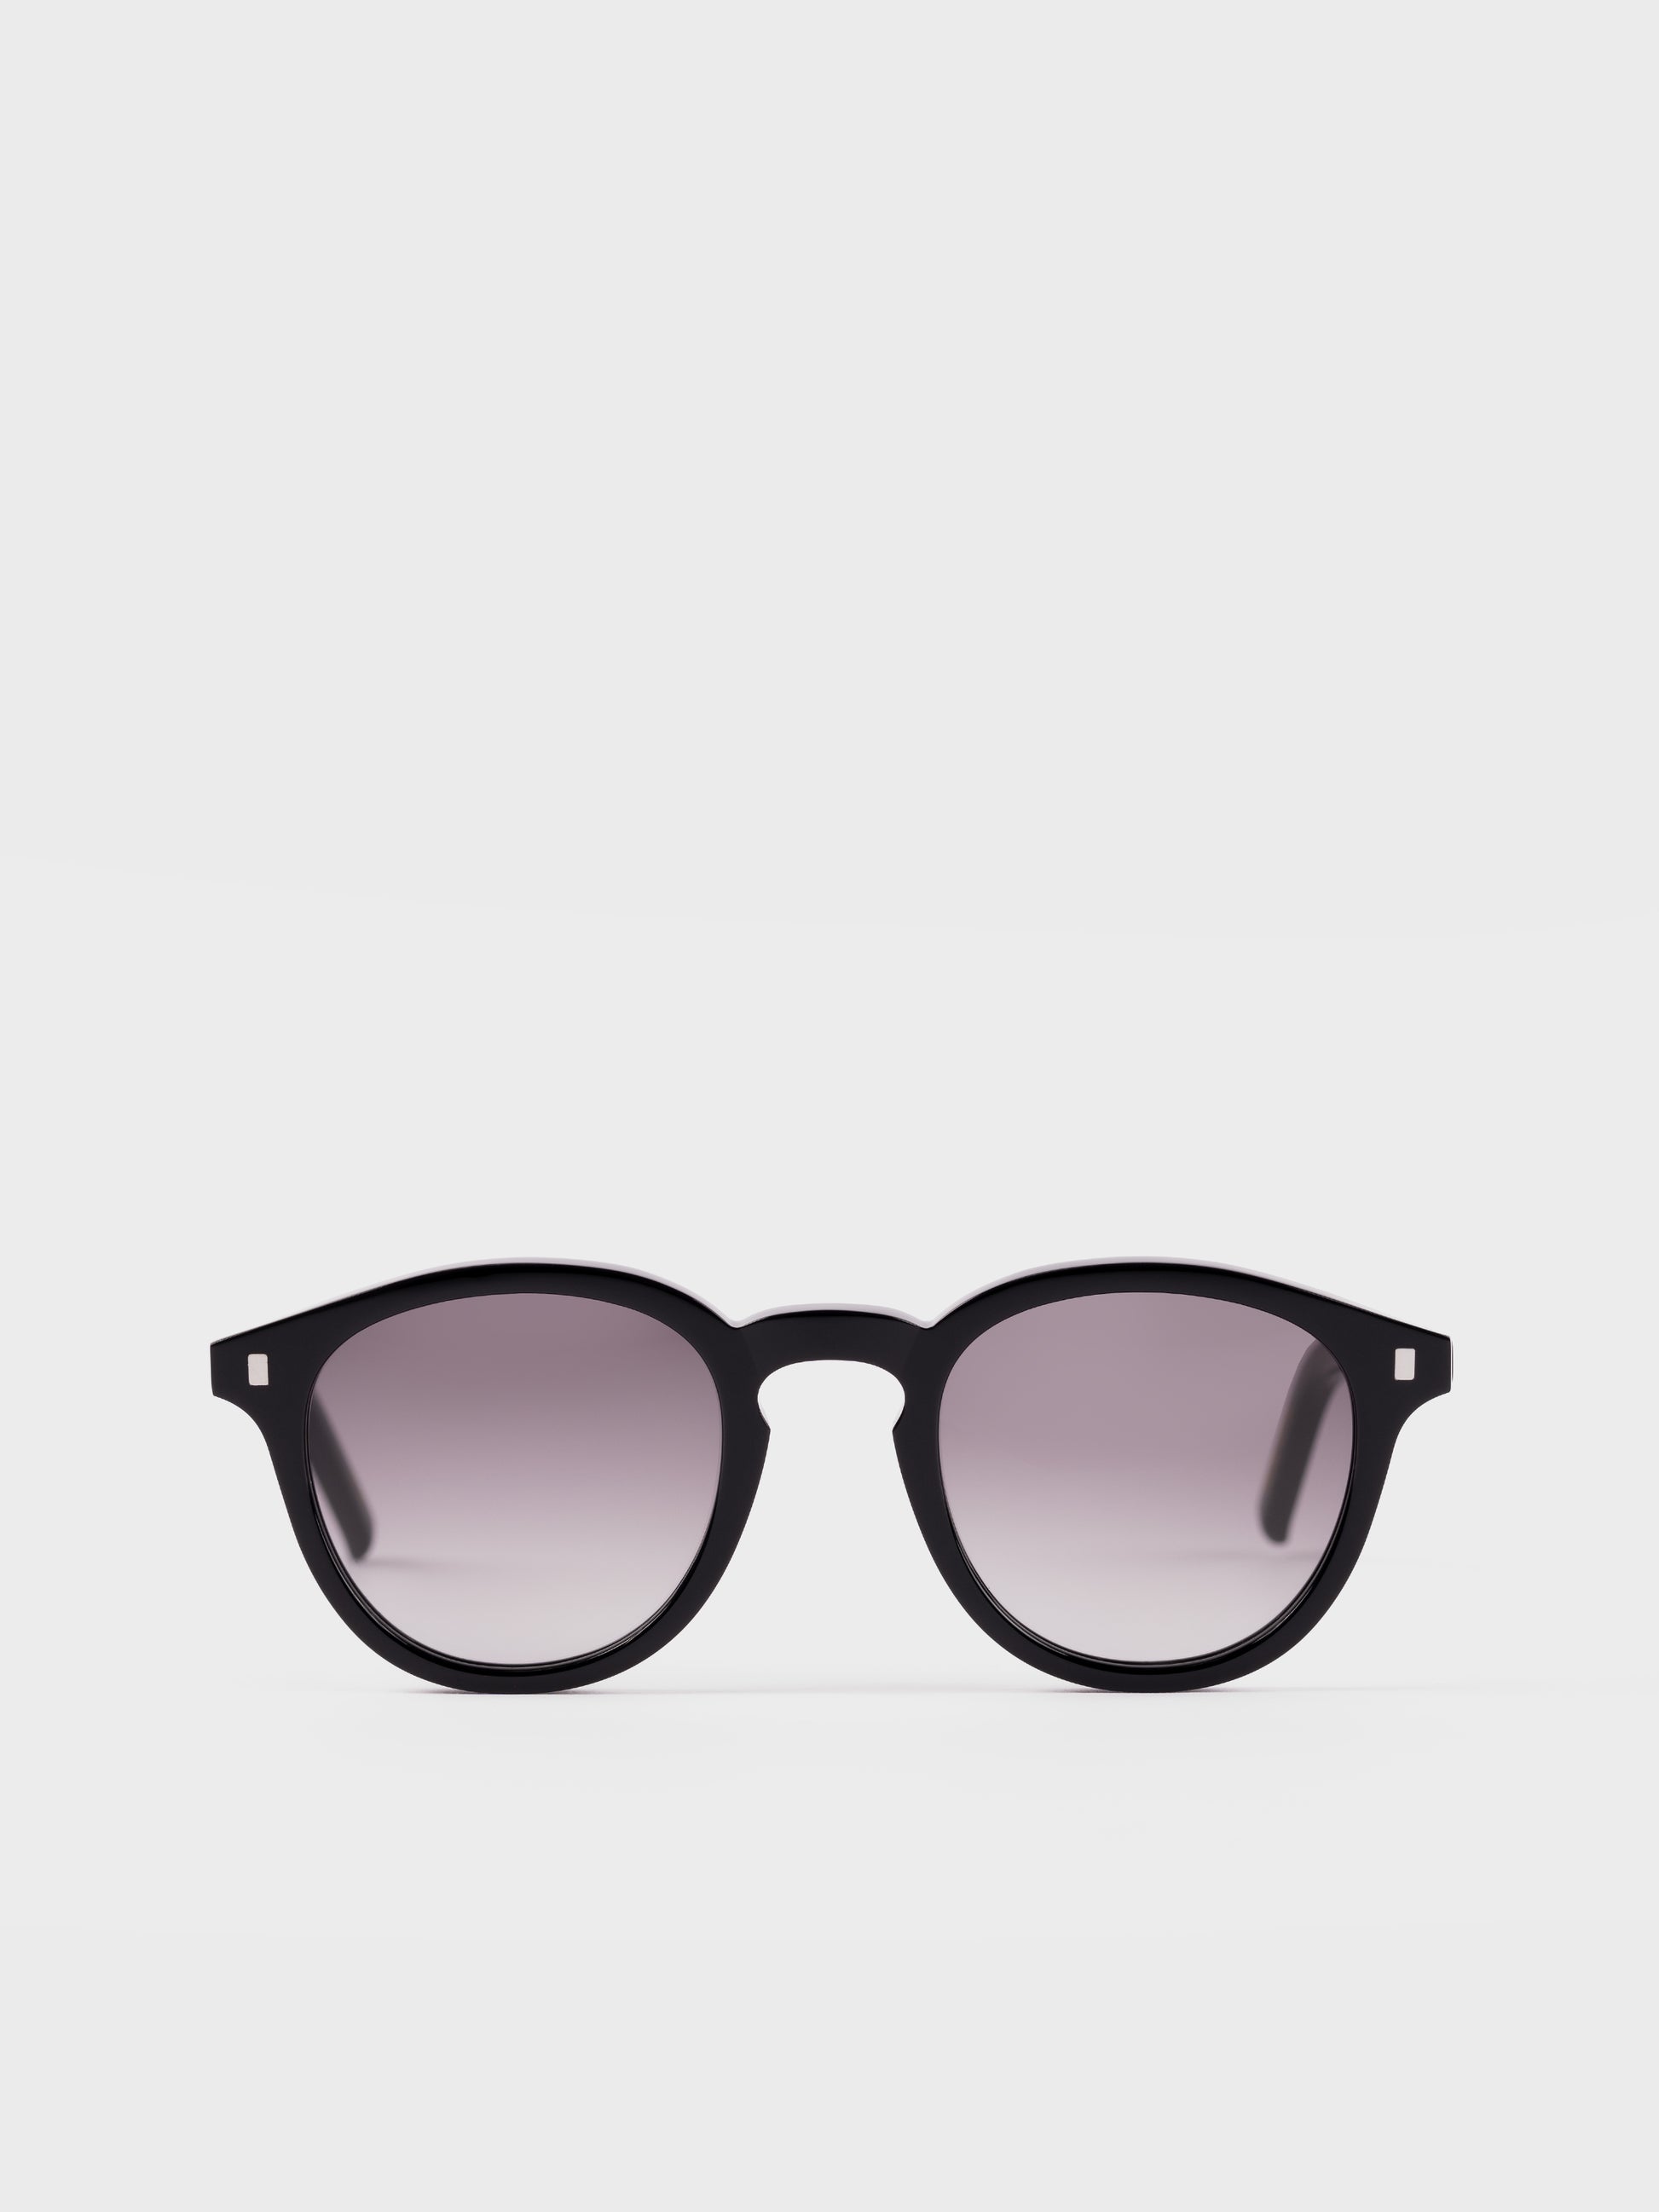 Monokel Sunglasses - Nelson Black/Grey Lens